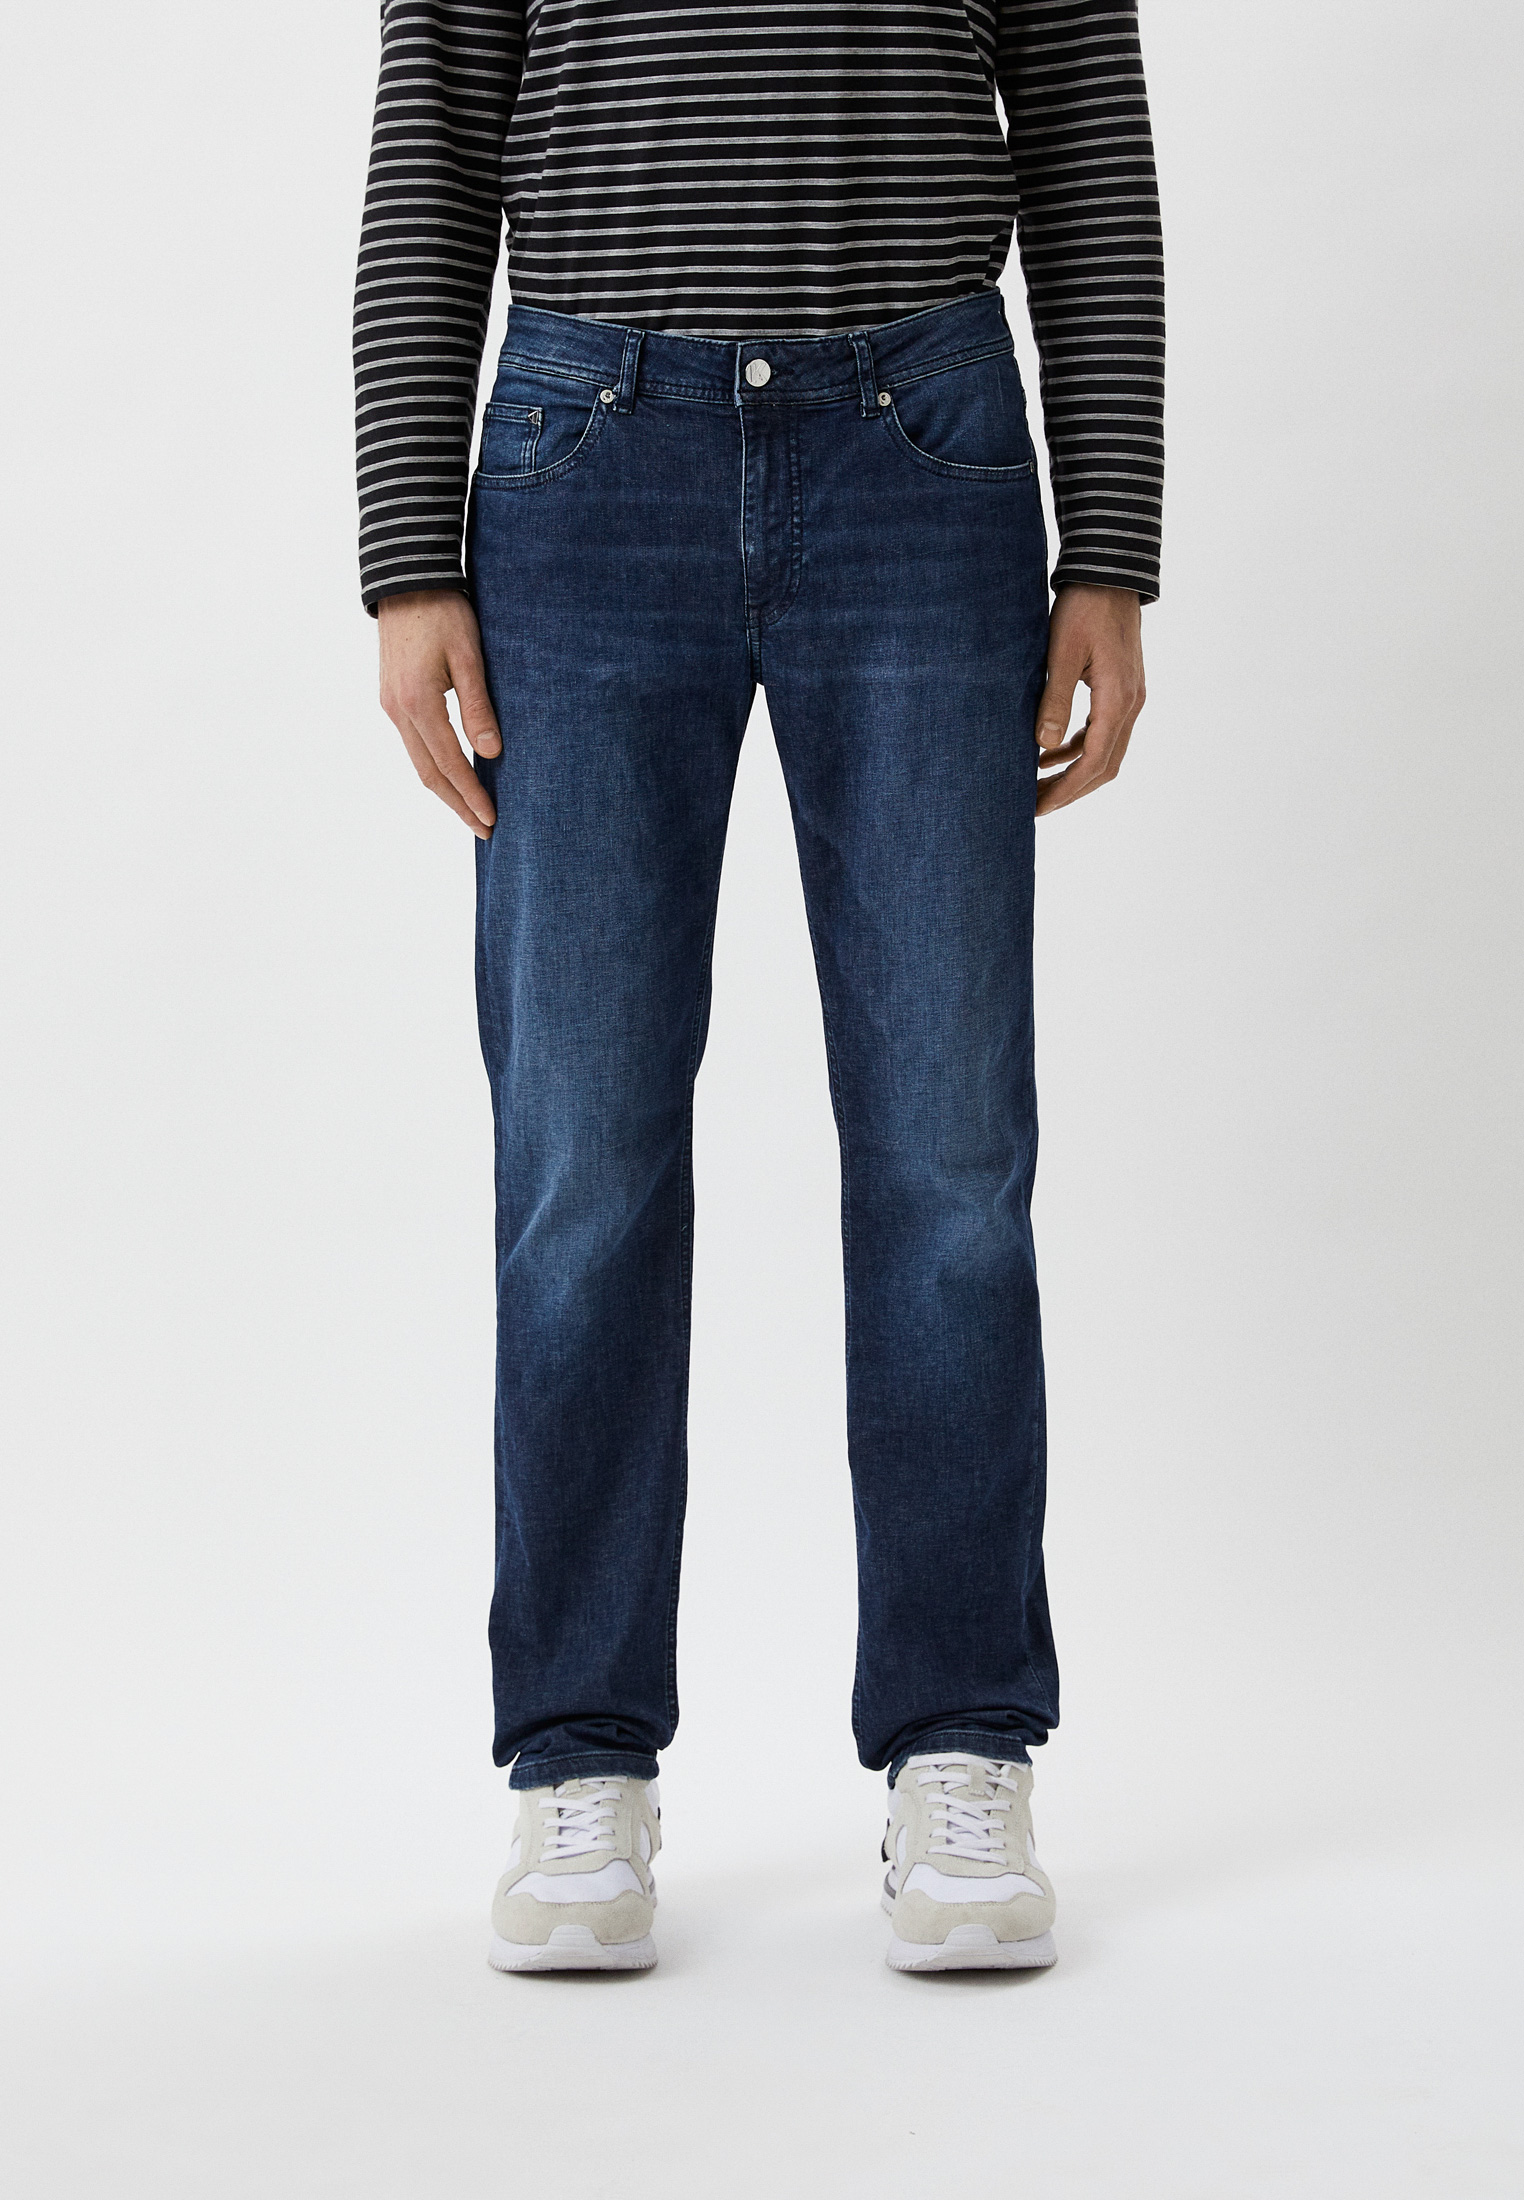 Мужские зауженные джинсы Karl Lagerfeld (Карл Лагерфельд) 521833-265840: изображение 1